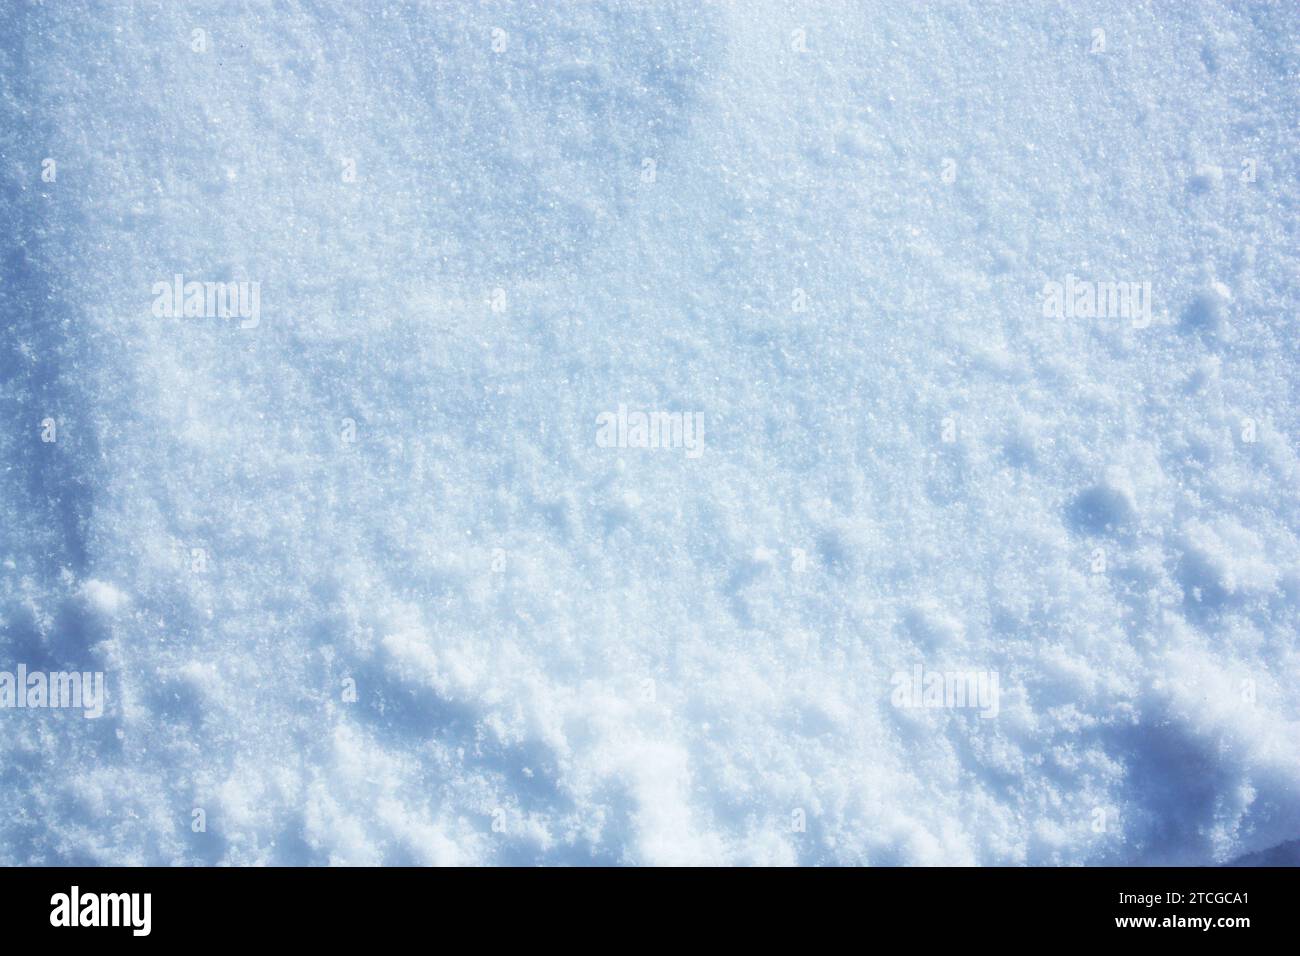 la consistenza della soffice neve invernale con grumi. Foto di alta qualità Foto Stock